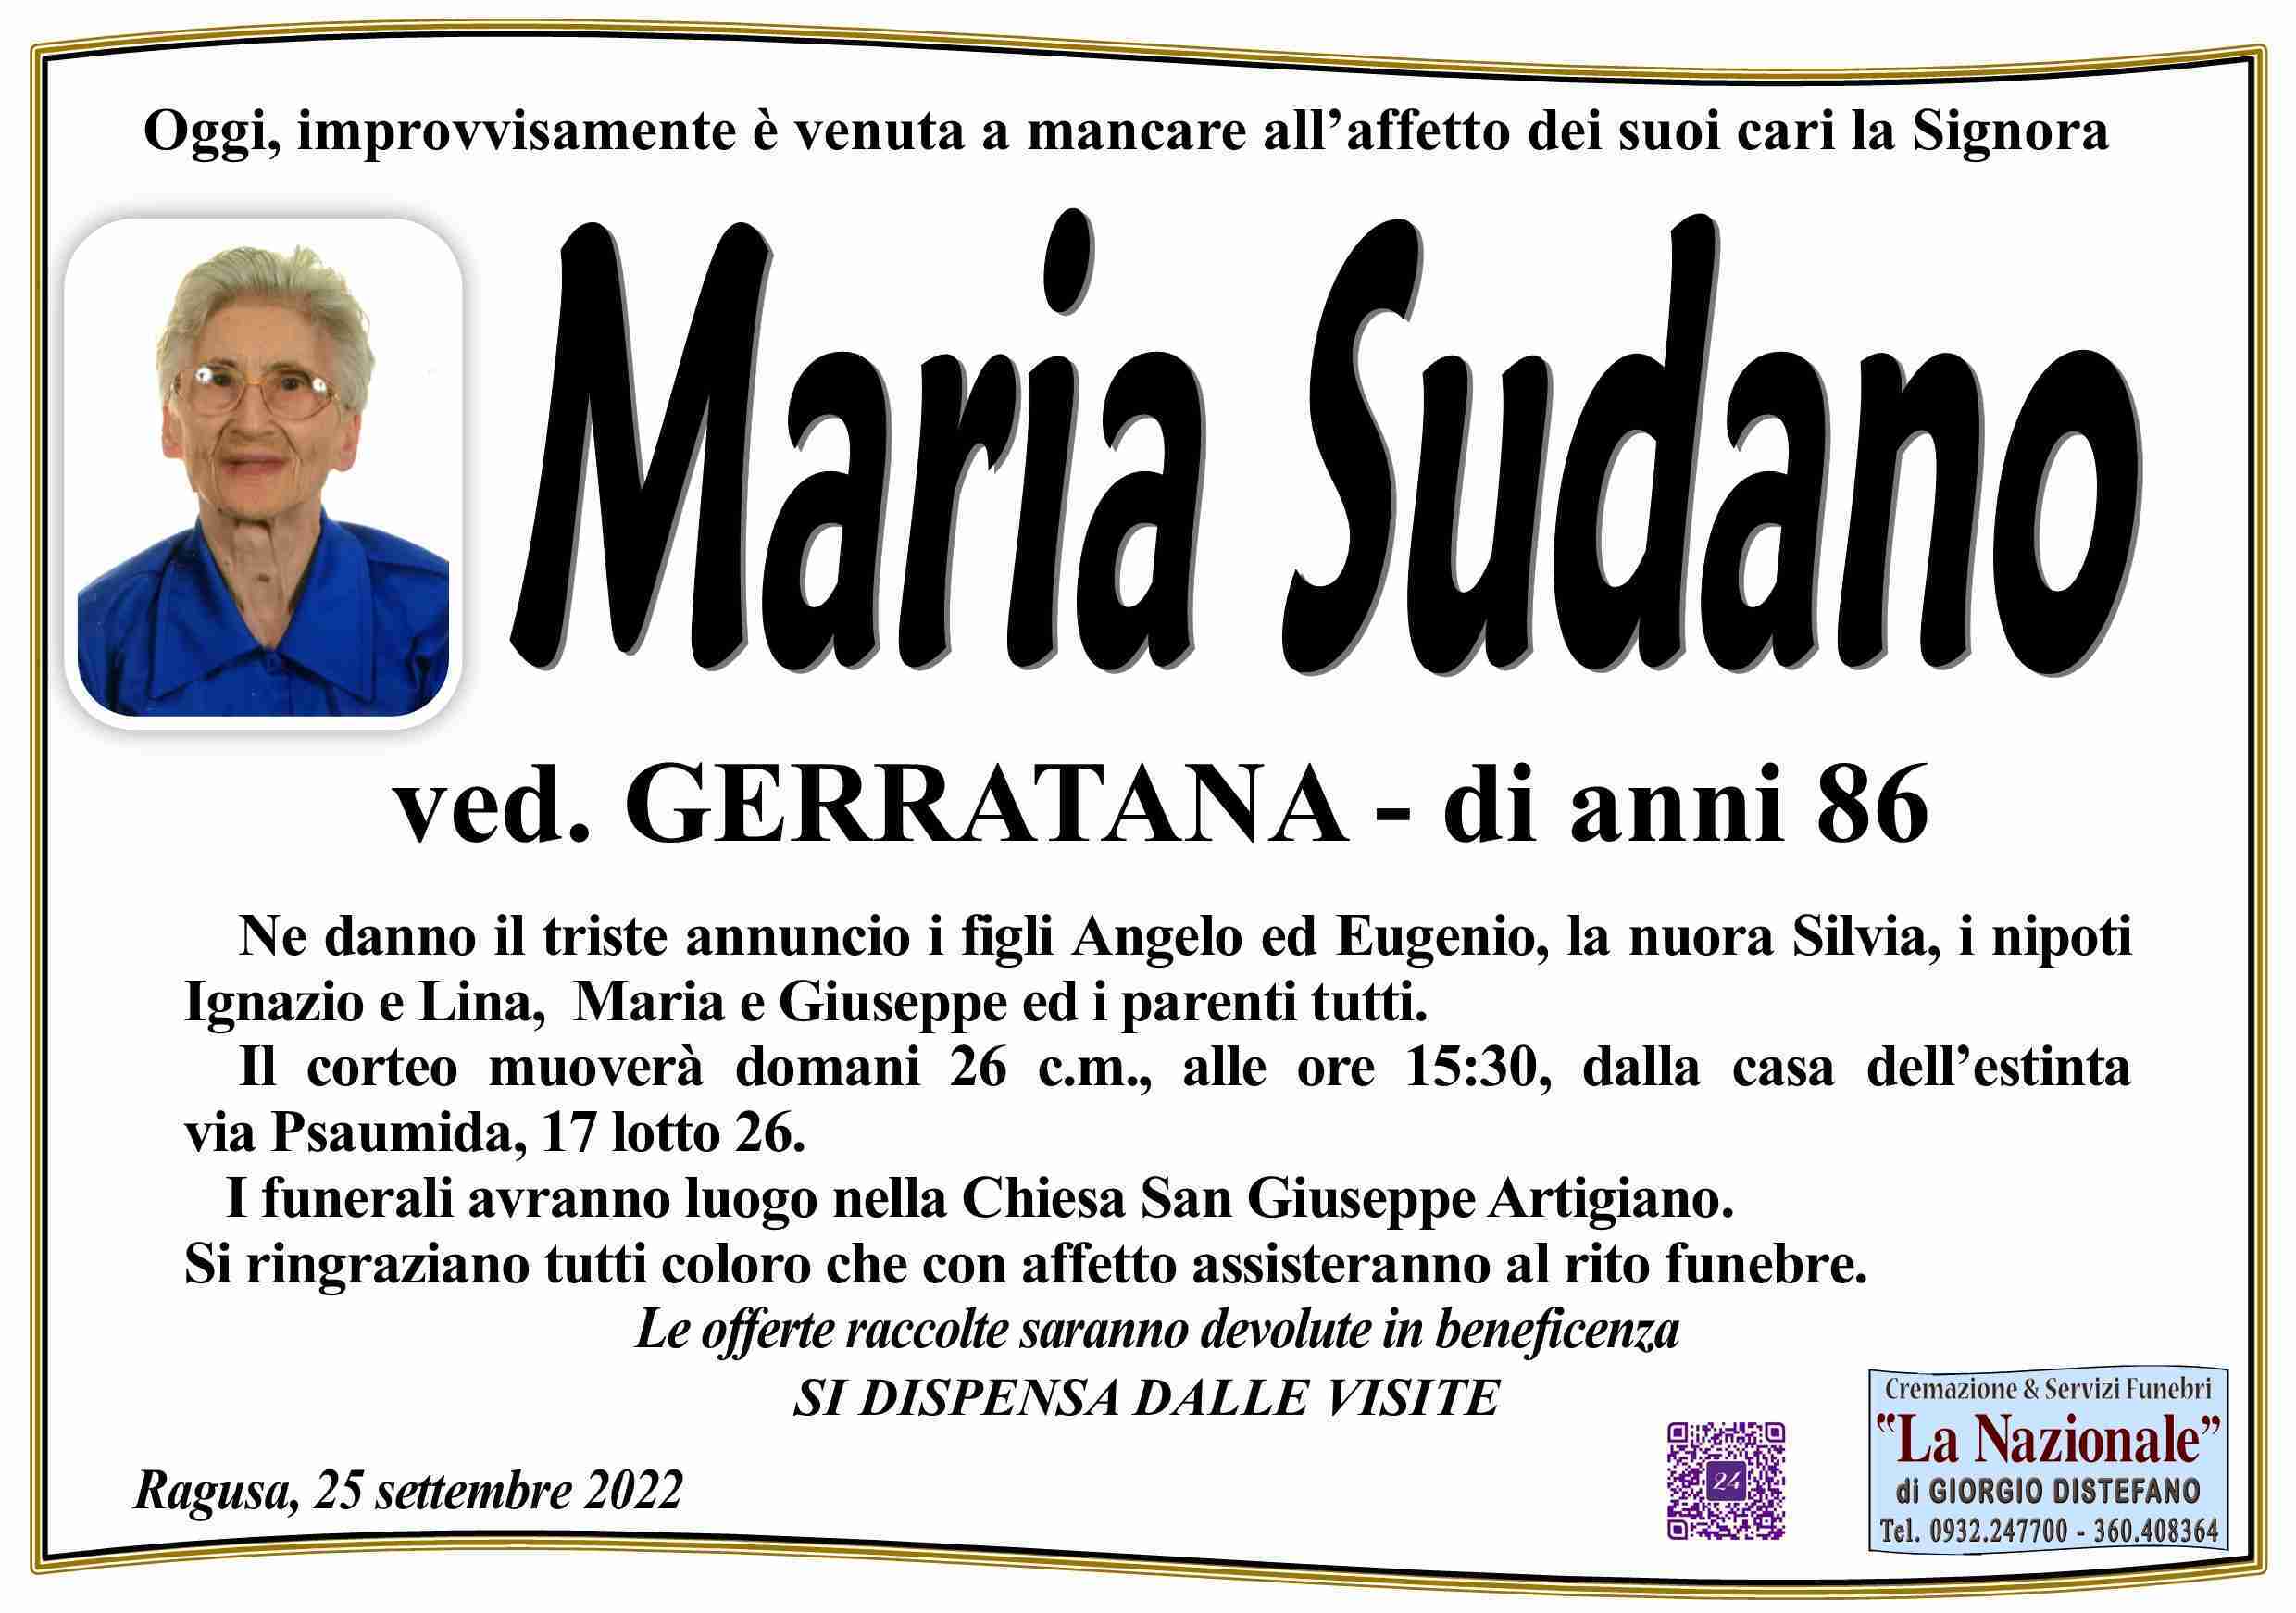 Maria Sudano